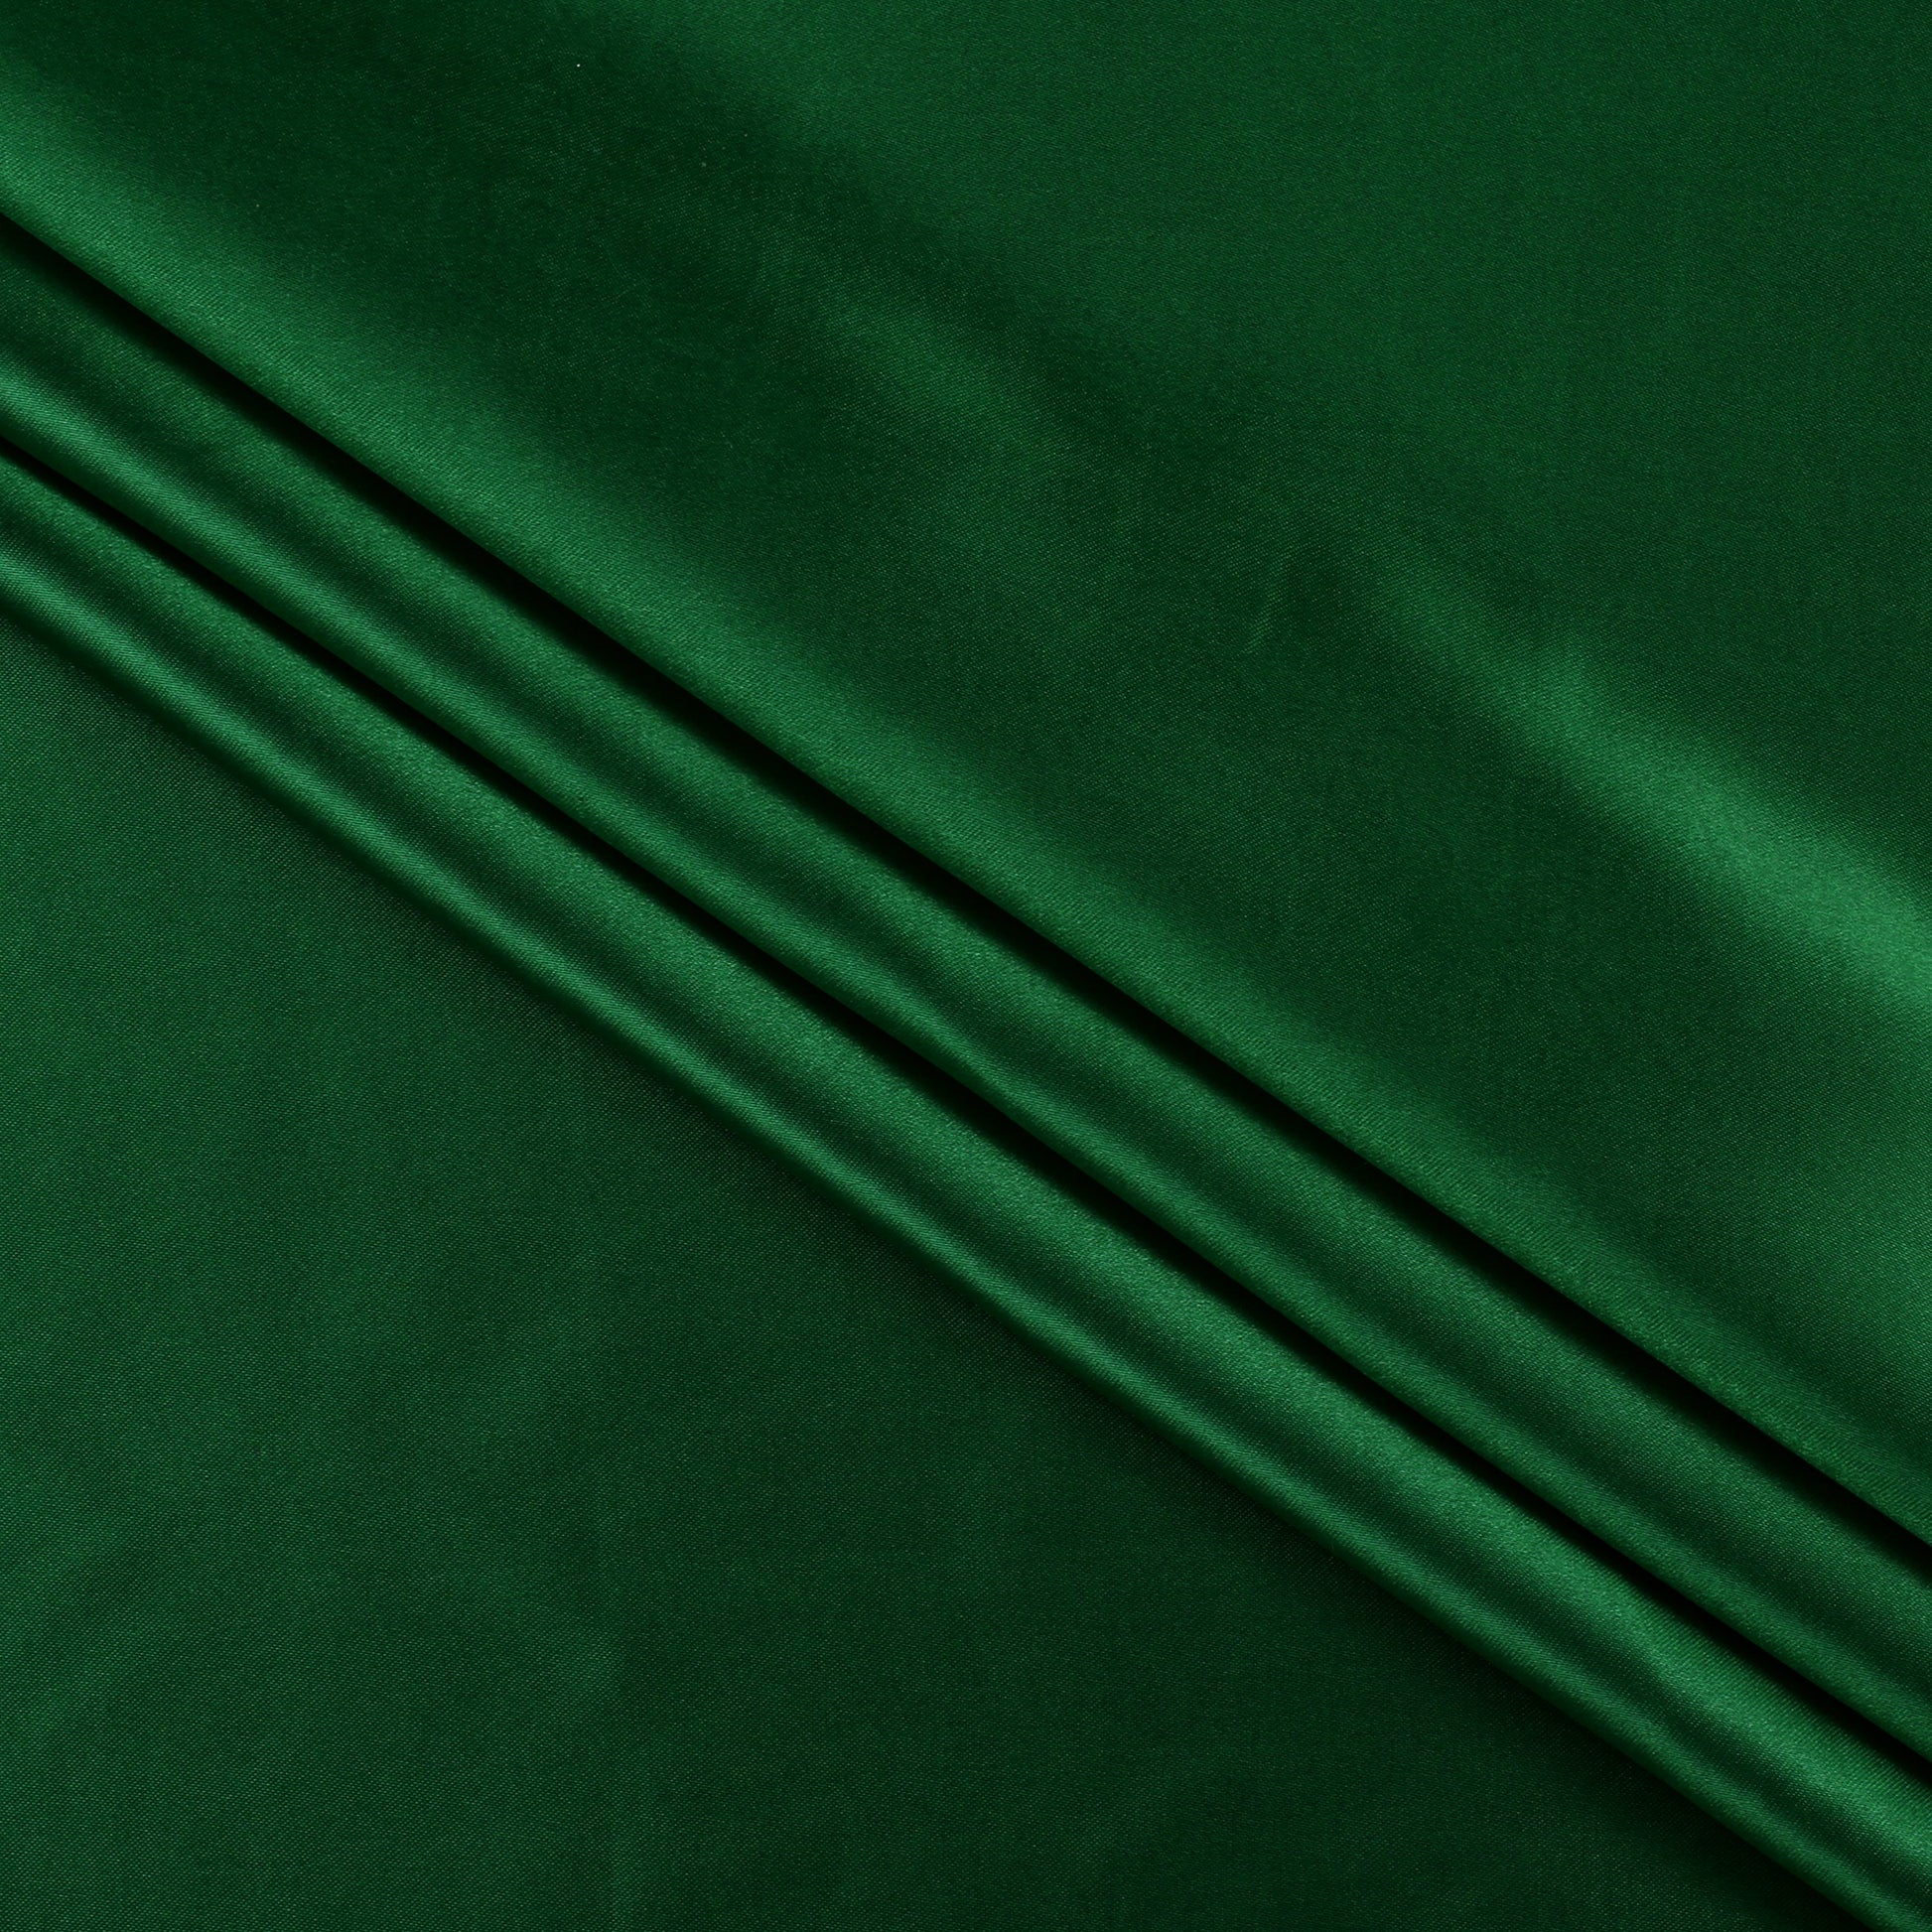 Green,df9a31ac-0254-4ef7-9e4e-1ac2420e49bf